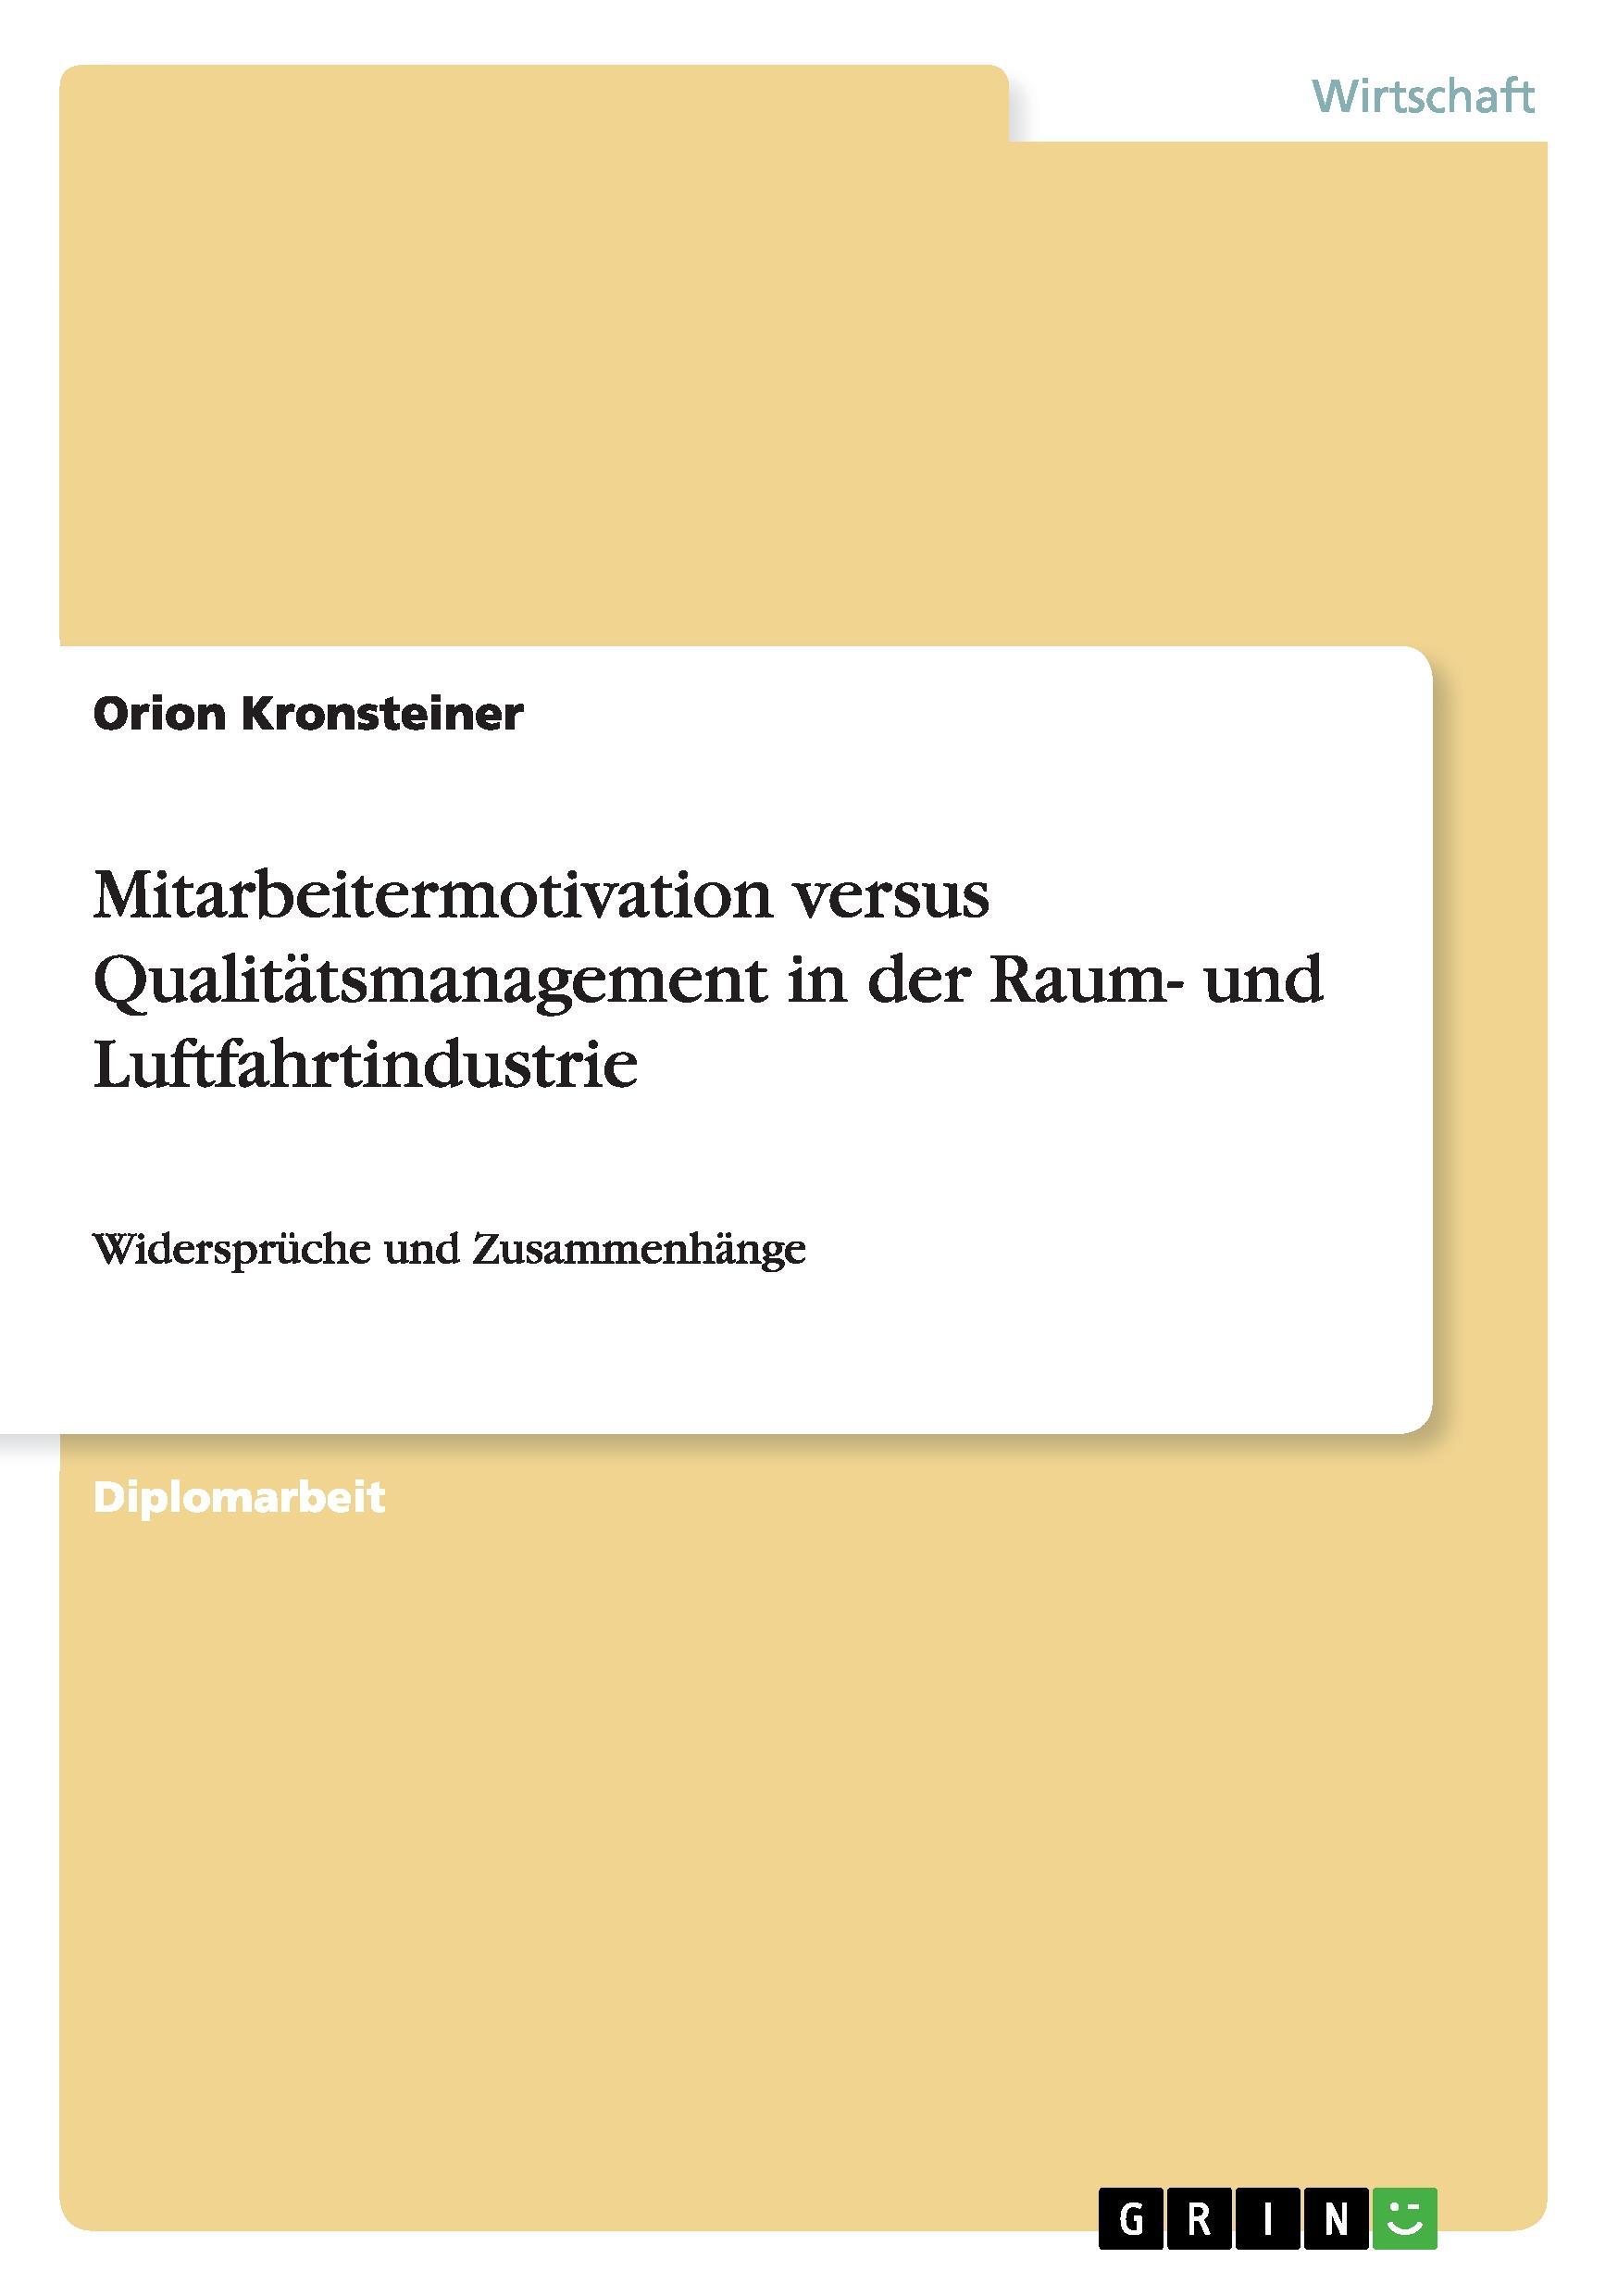 Mitarbeitermotivation versus Qualitaetsmanagement in der Raum- und Luftfahrtindustrie - Kronsteiner, Orion